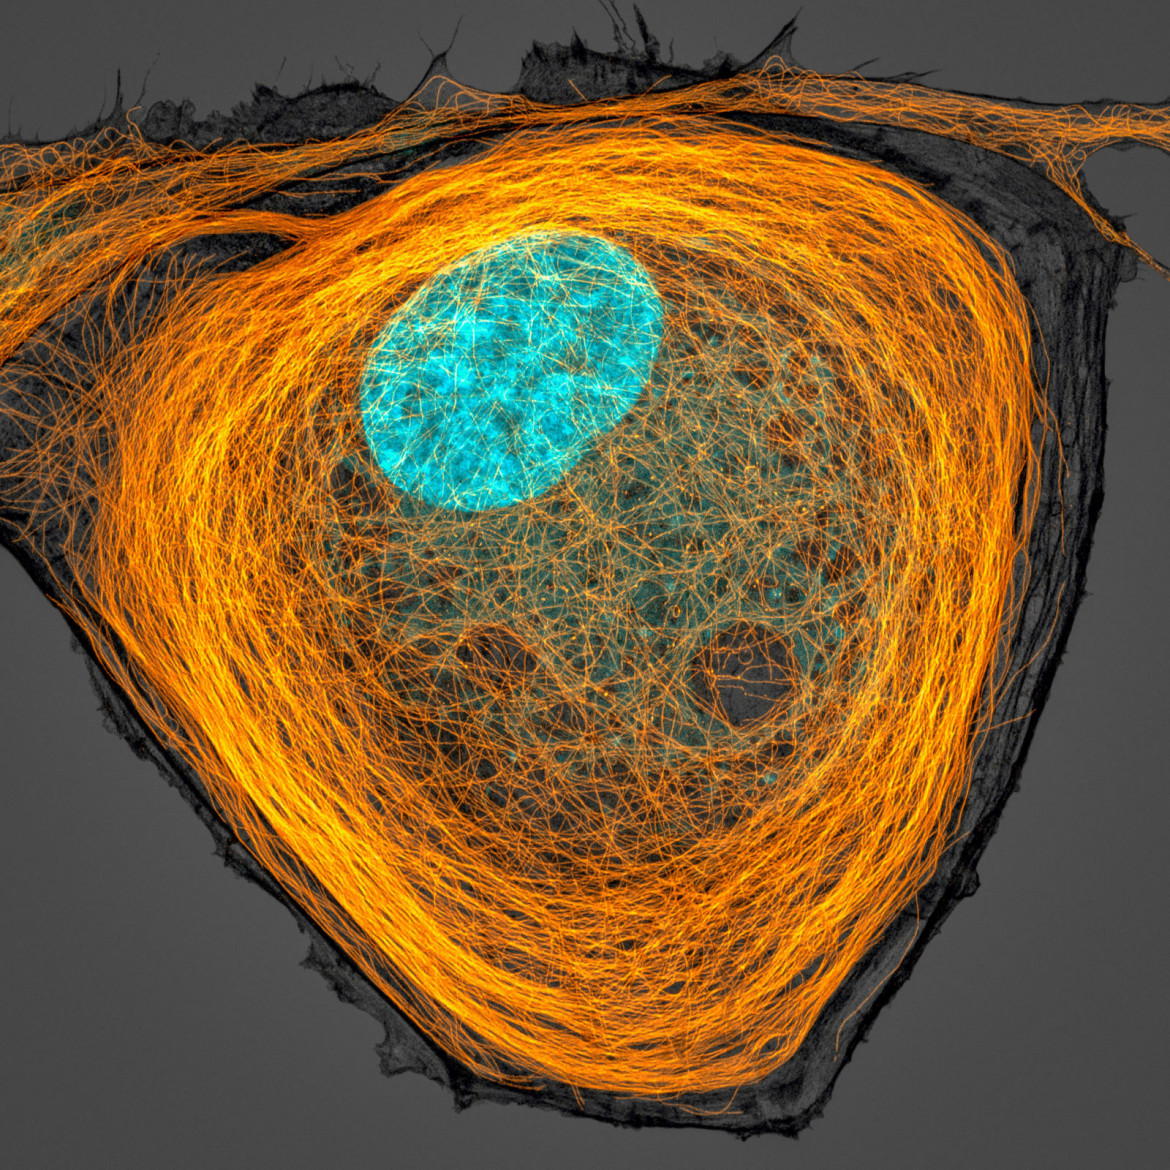 fot. Jason Kirk, mikrotubule wewnątrz komórki (na pomarańczowo), 7. miejsce w konkursie Nikon's Small World 2020